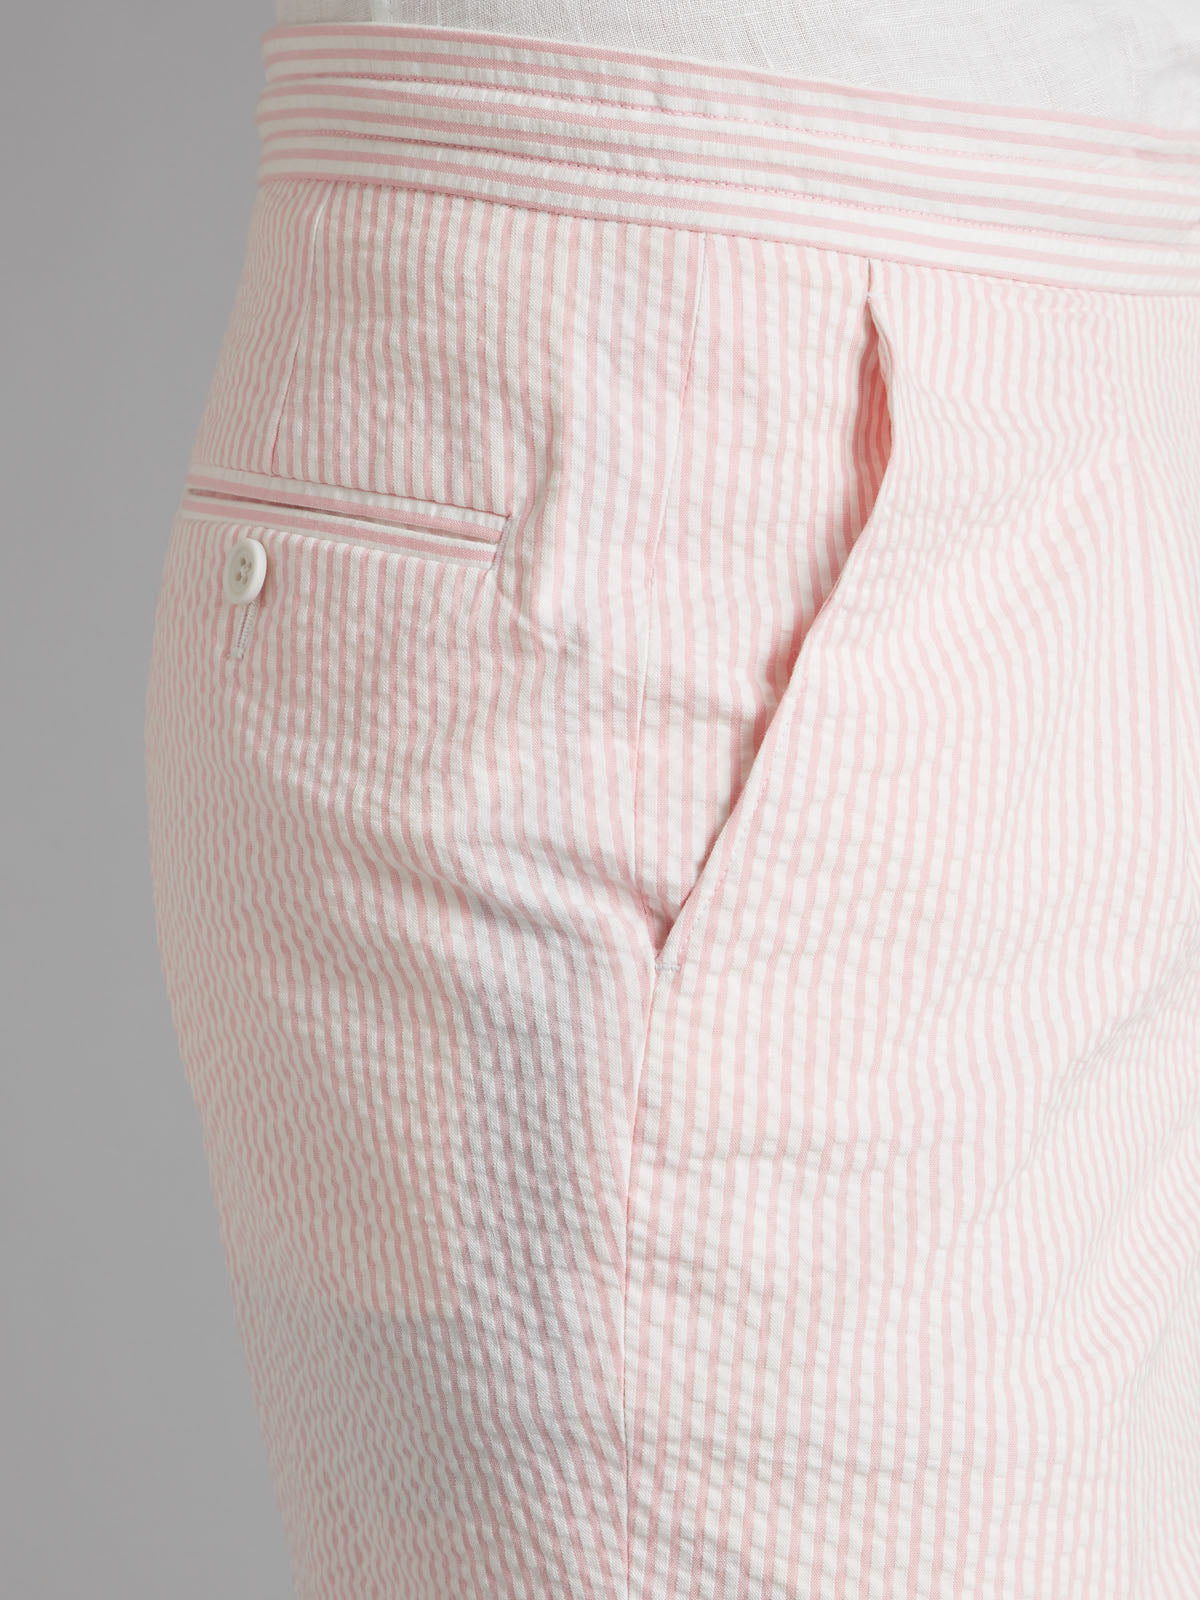 Drawcord Shorts Seersucker - Pink/White Stripe